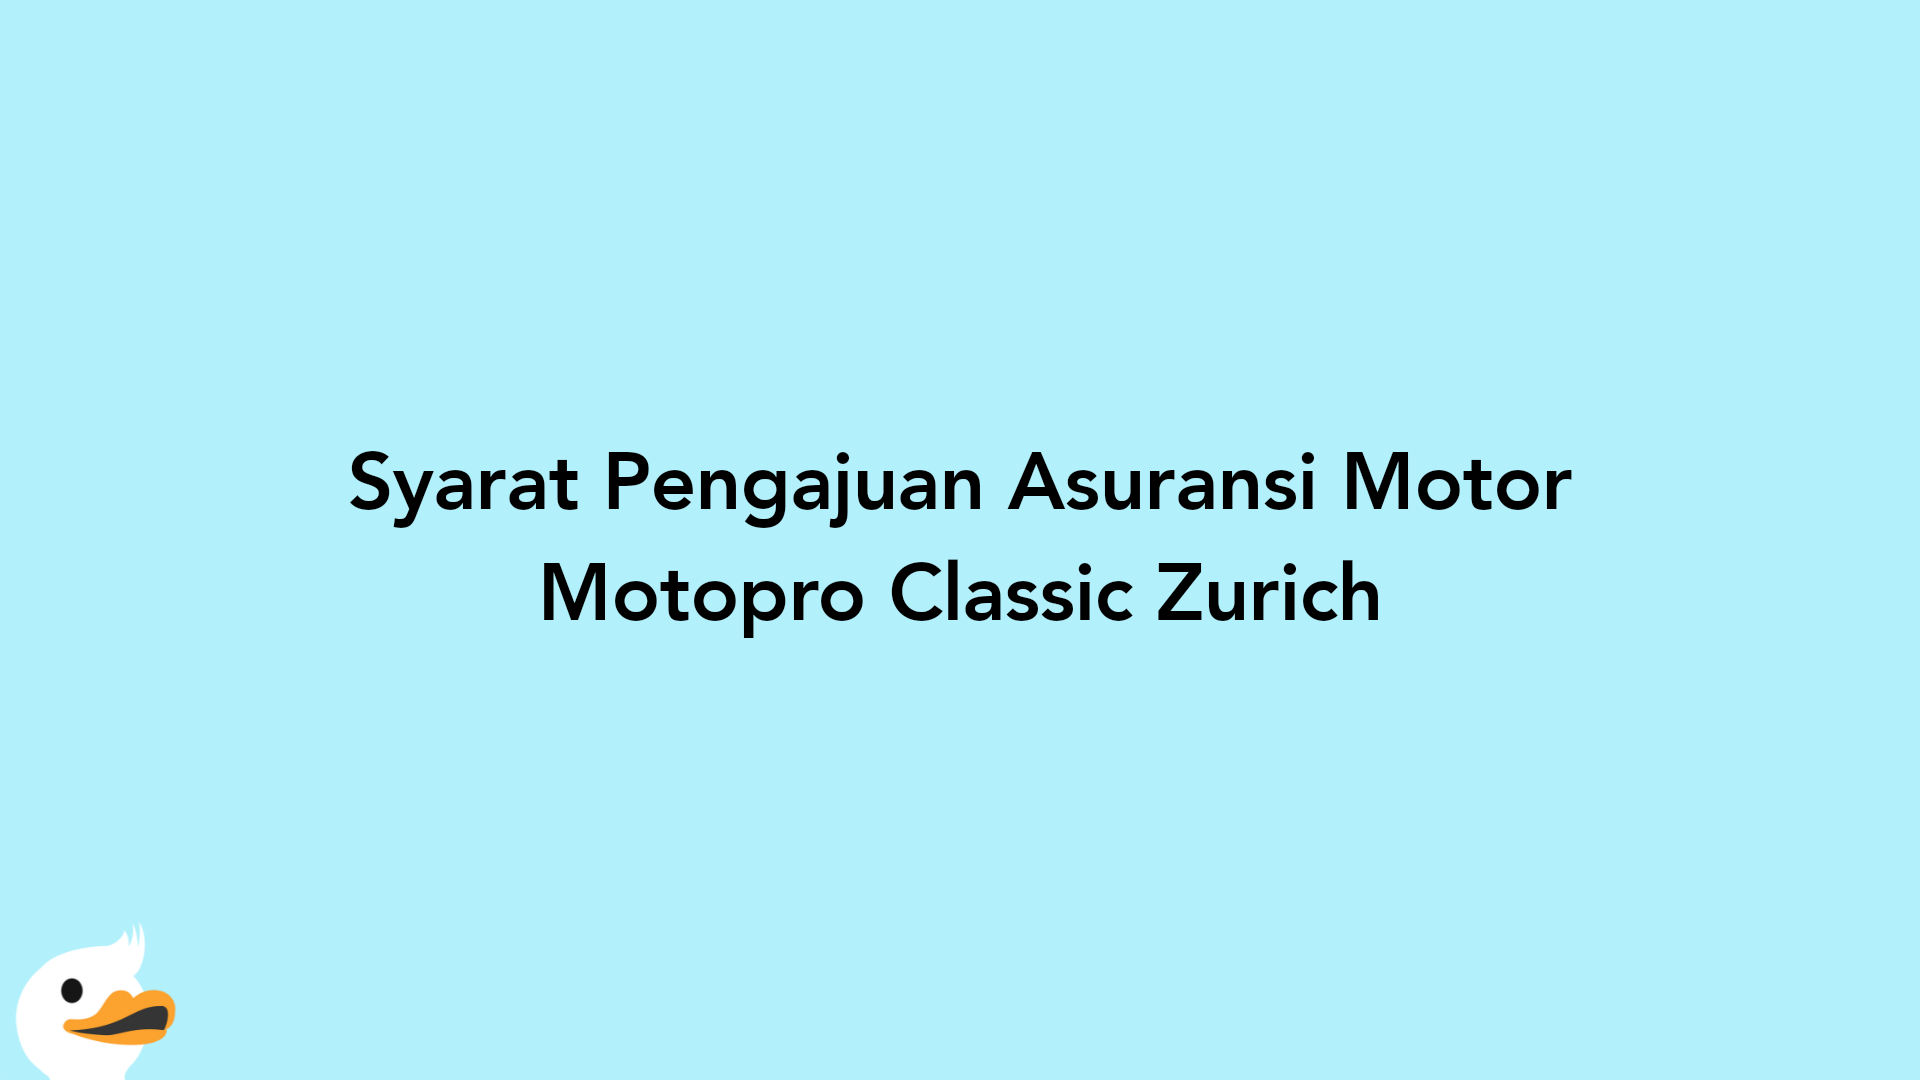 Syarat Pengajuan Asuransi Motor Motopro Classic Zurich